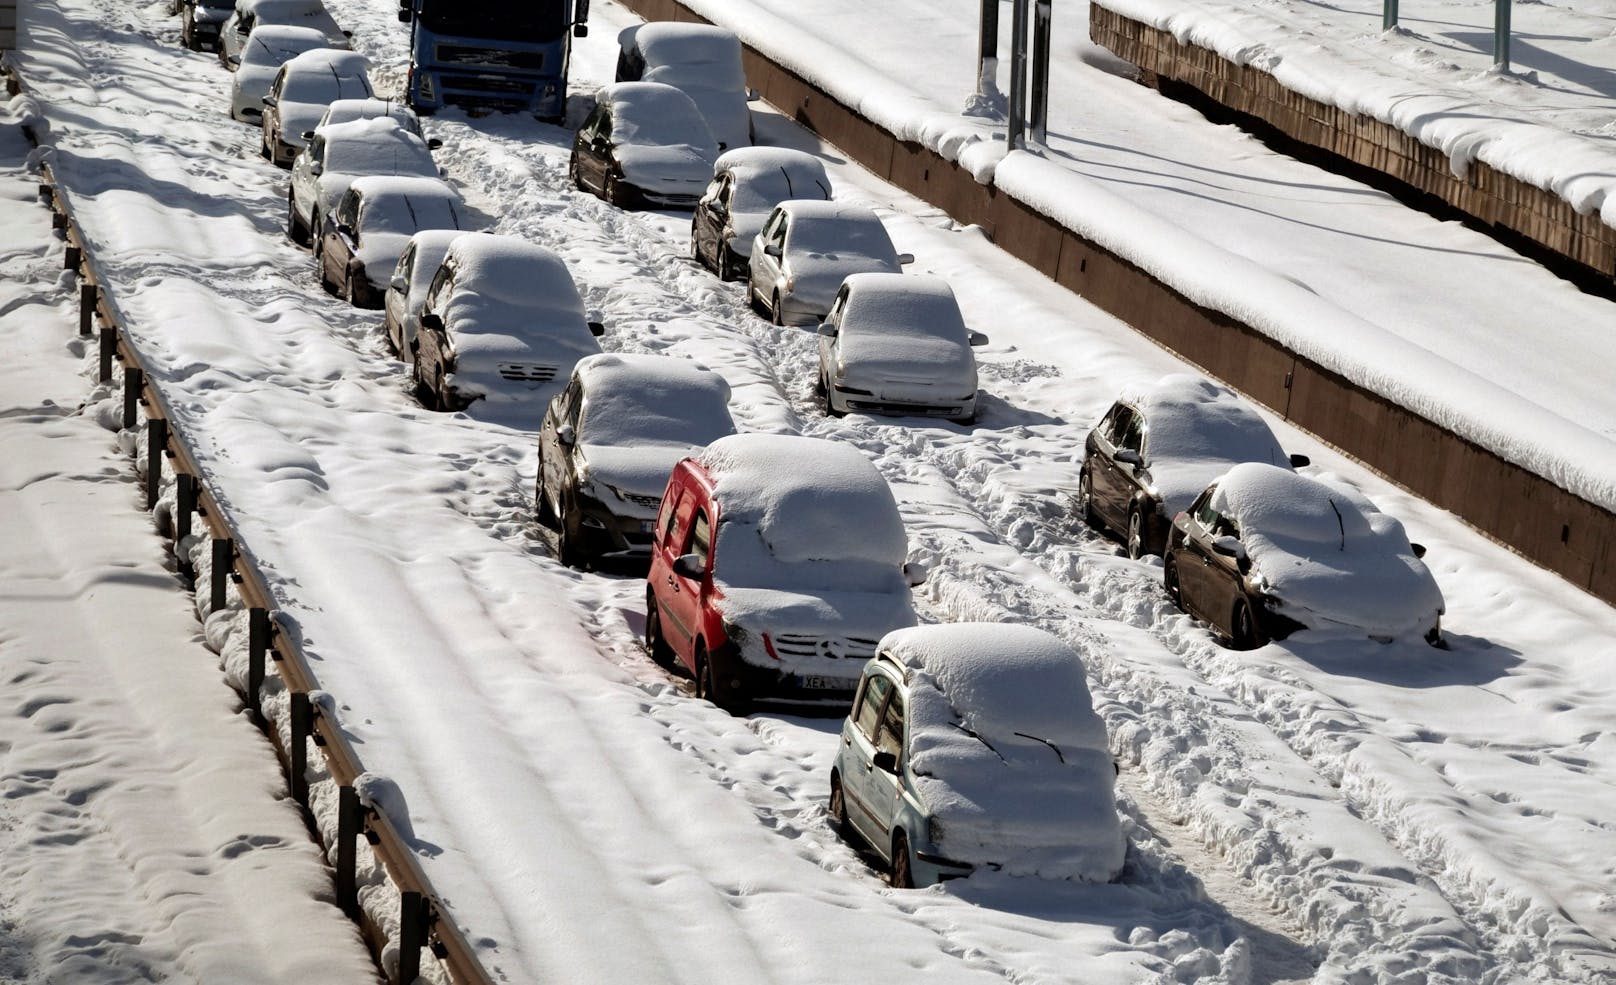 Athen im Schnee-Chaos: "Hunderte sitzen in Autos fest"